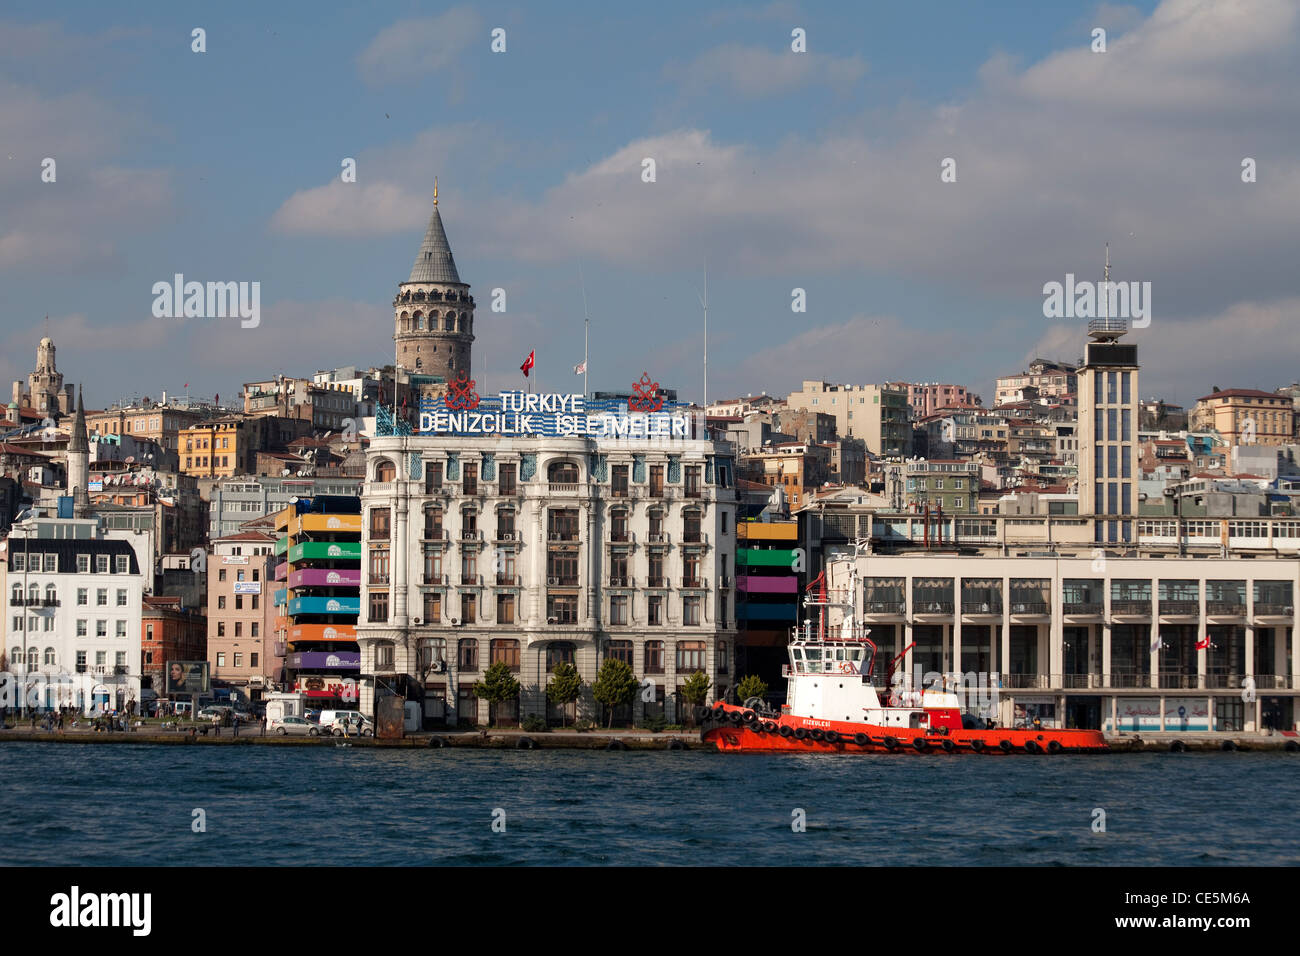 BEYOGLU GALATA TOWER VIEW FROM BOSPHORUS ISTANBUL Stock Photo